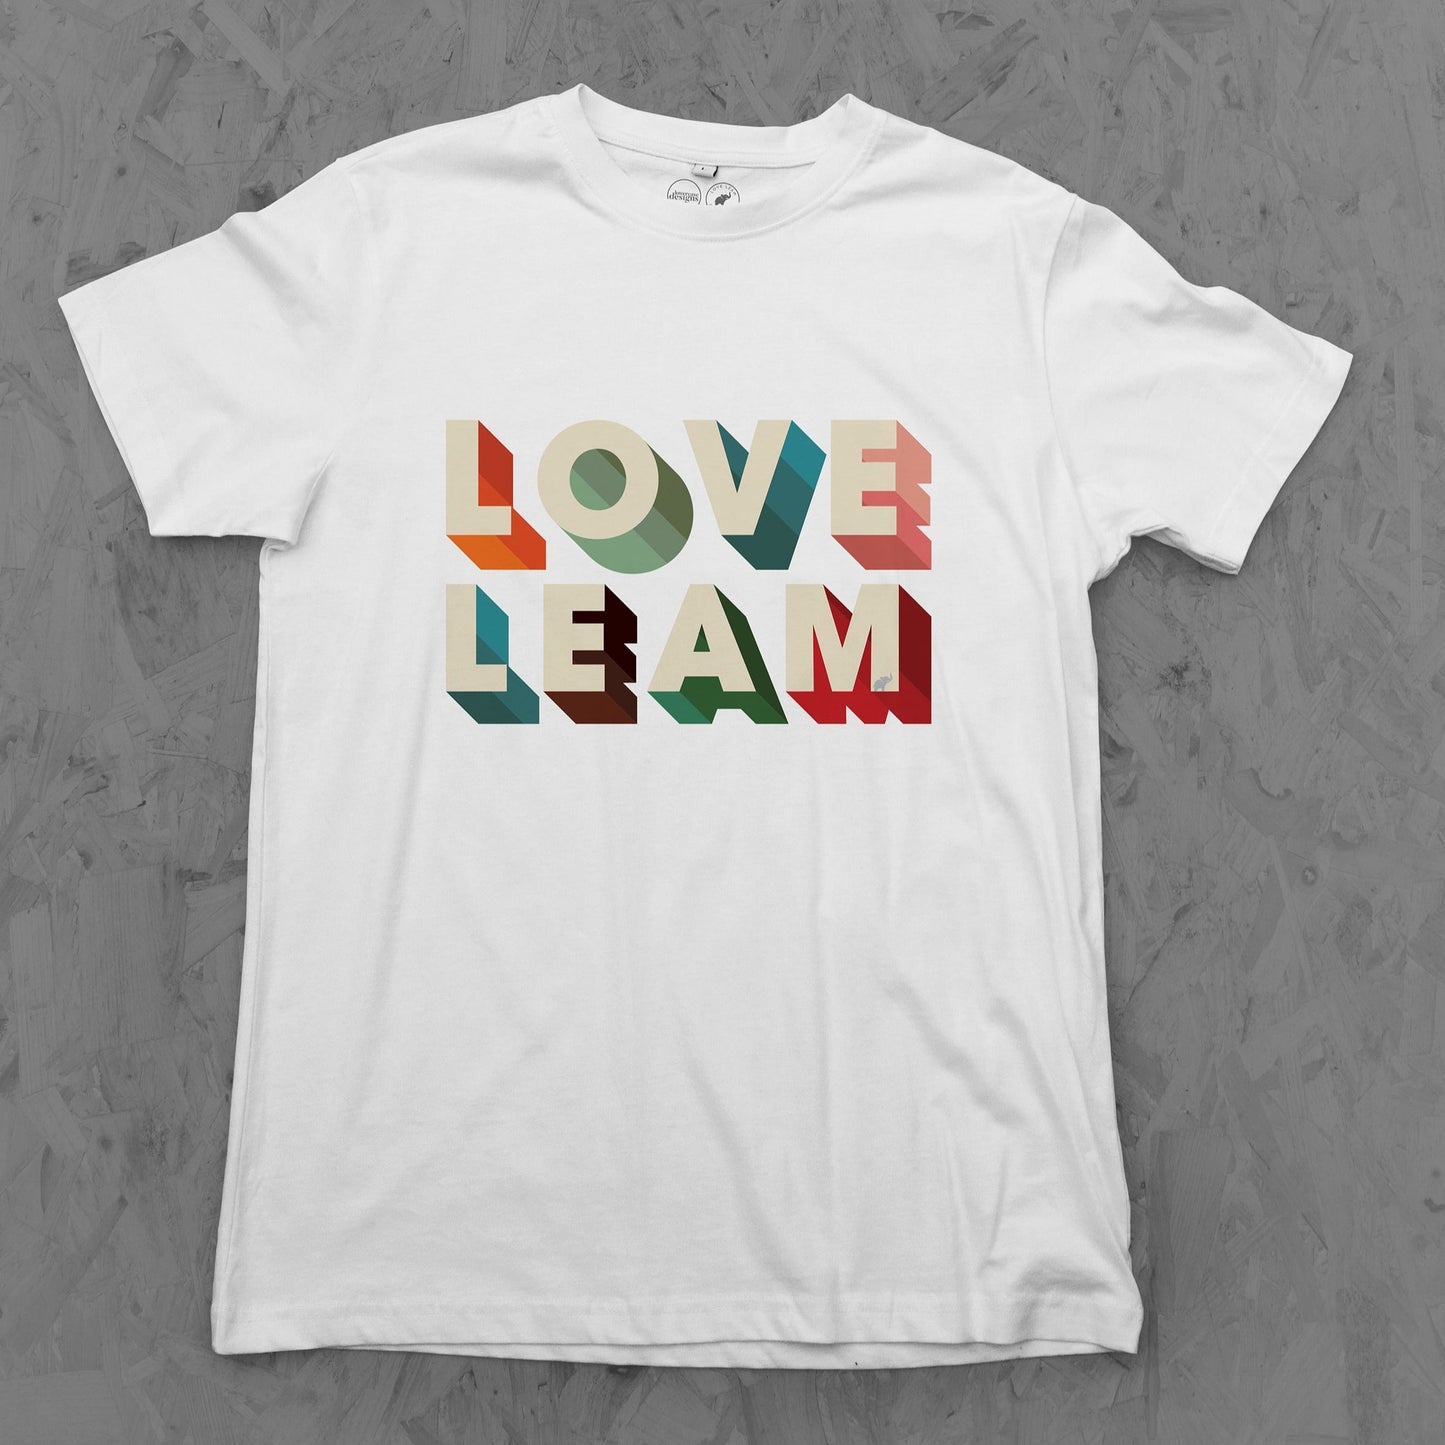 Love Leam 3 Tee Child's sizes 3-14 years